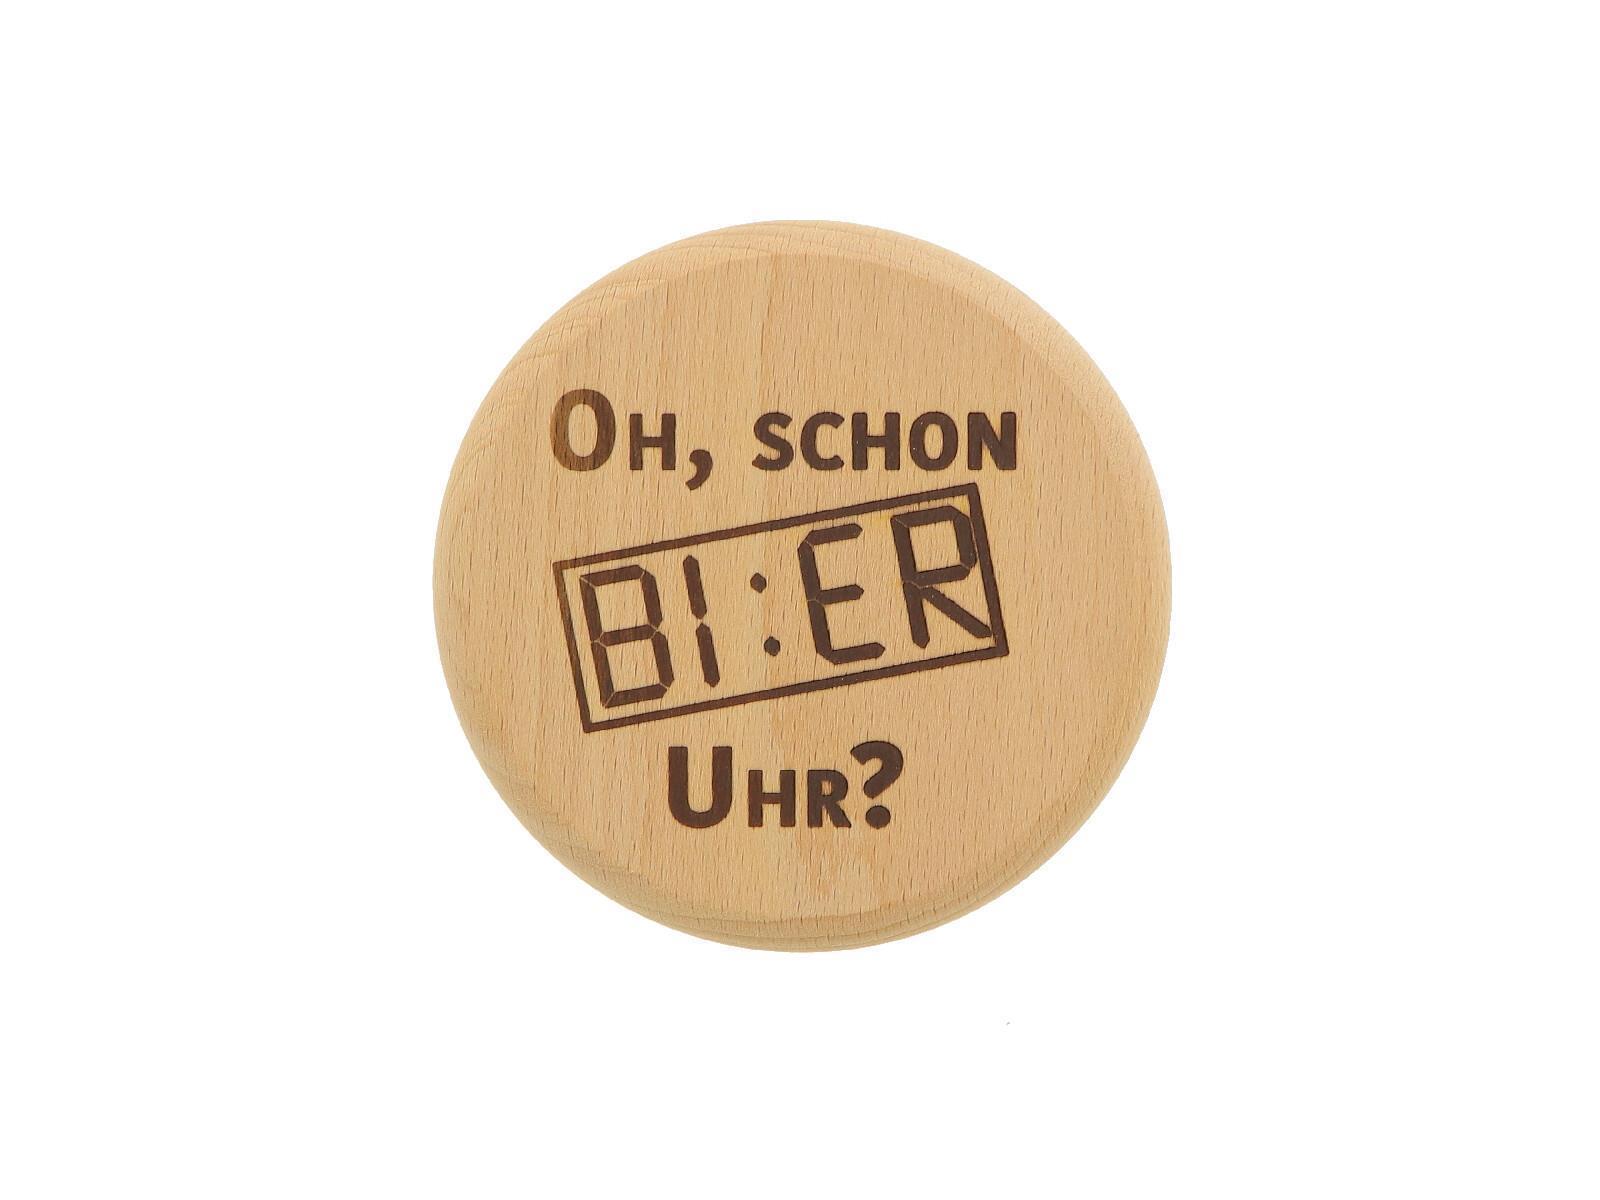 Bierglasdeckel mit Spruch Bier Uhr" aus Holz 10 cm"